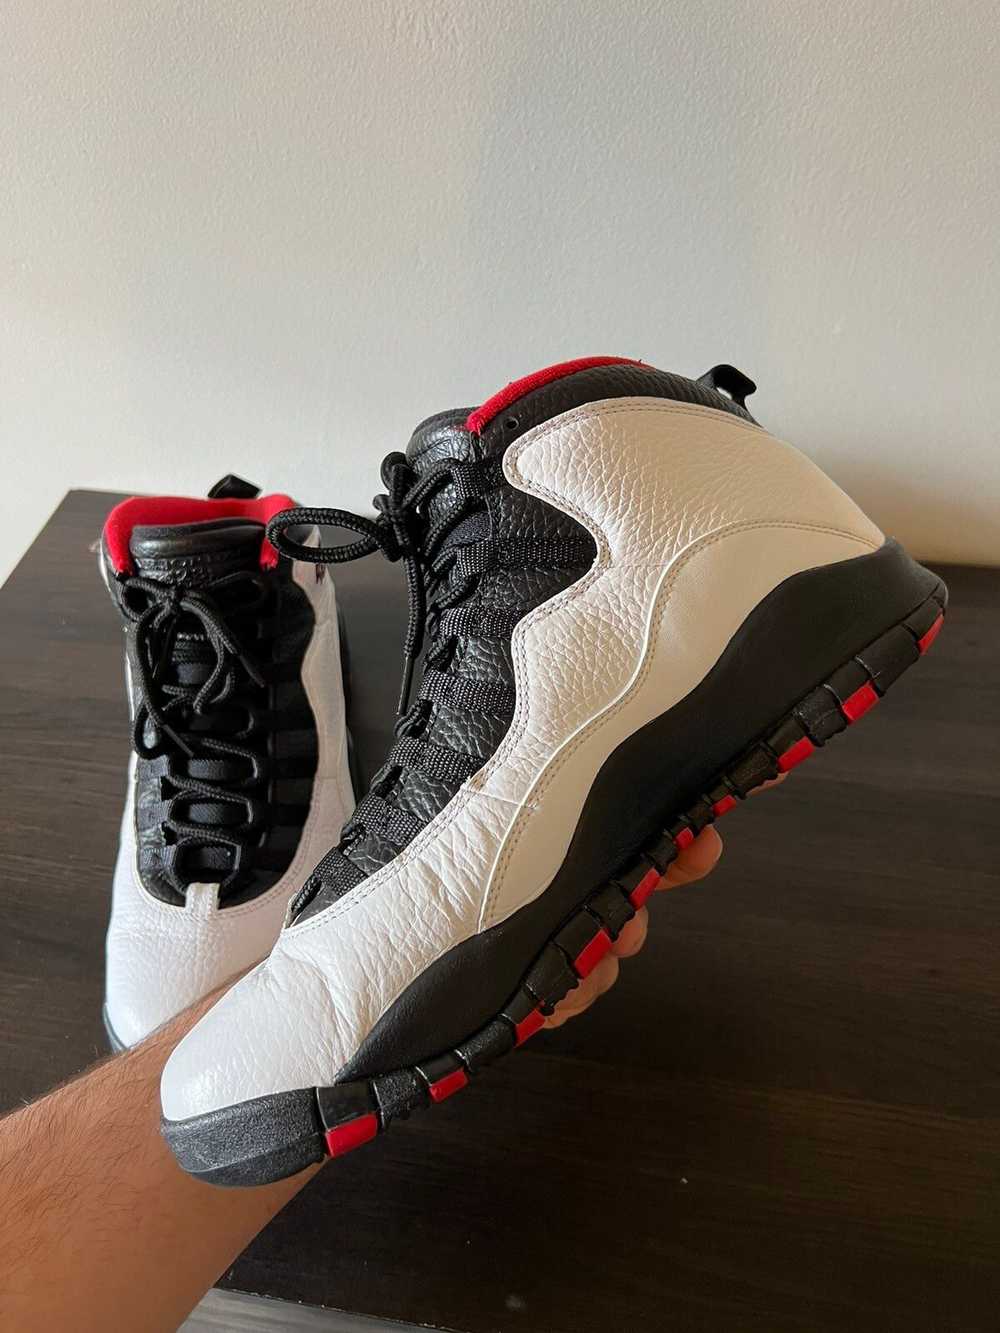 Jordan Brand × Nike Air Jordan 10 “Double Nickel” - image 8